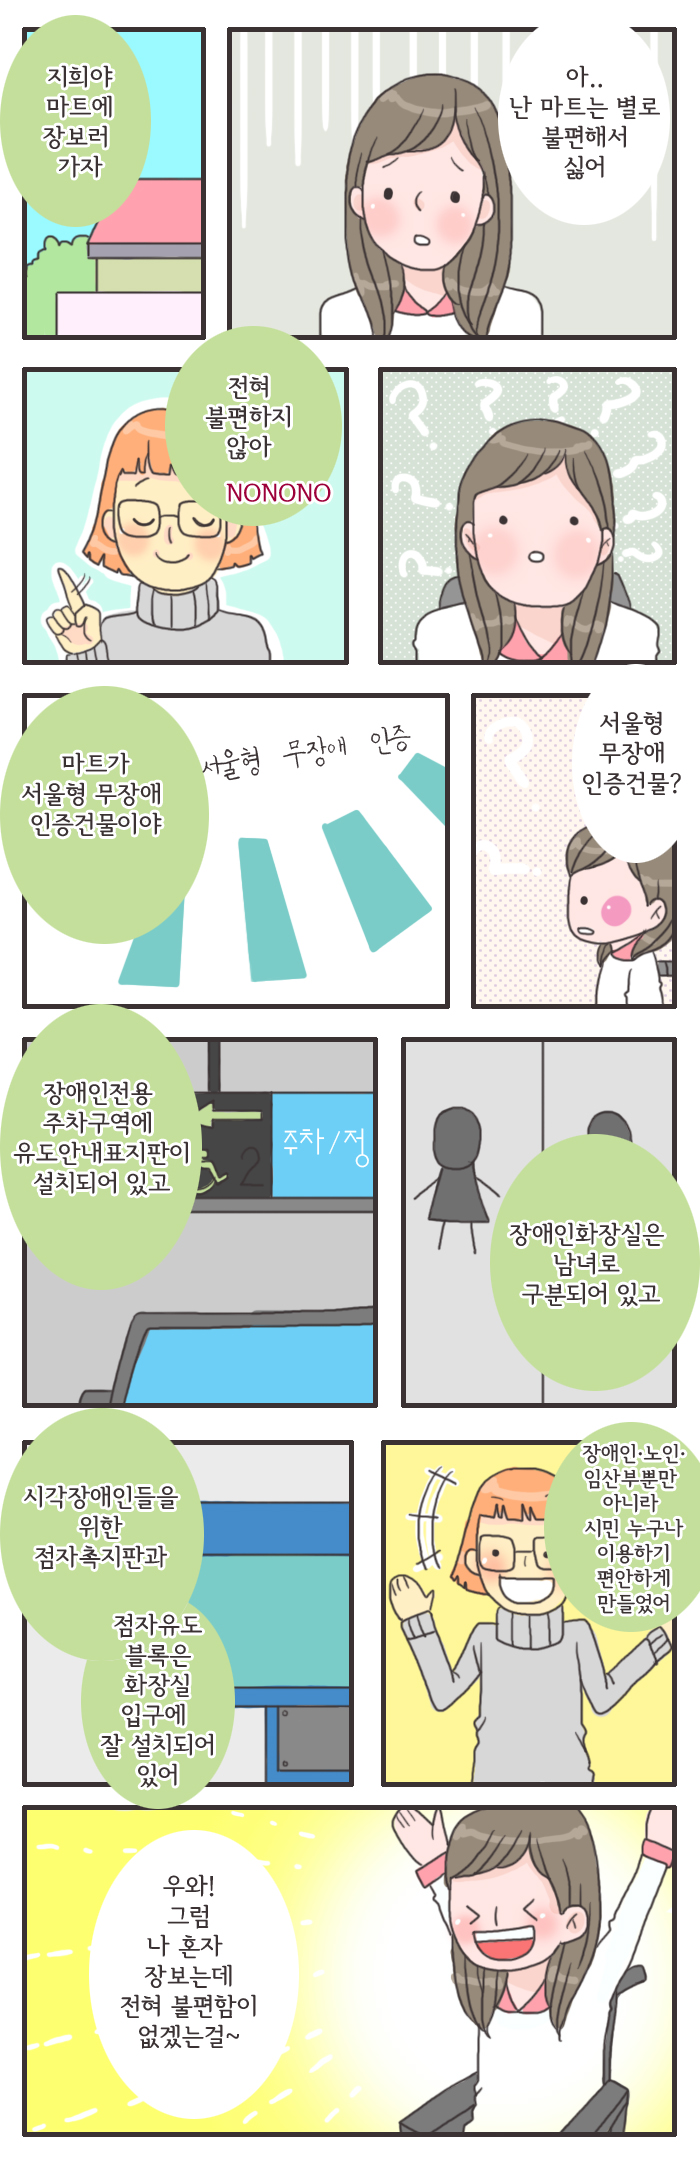 [웹툰] 서울형무장애인증이미지